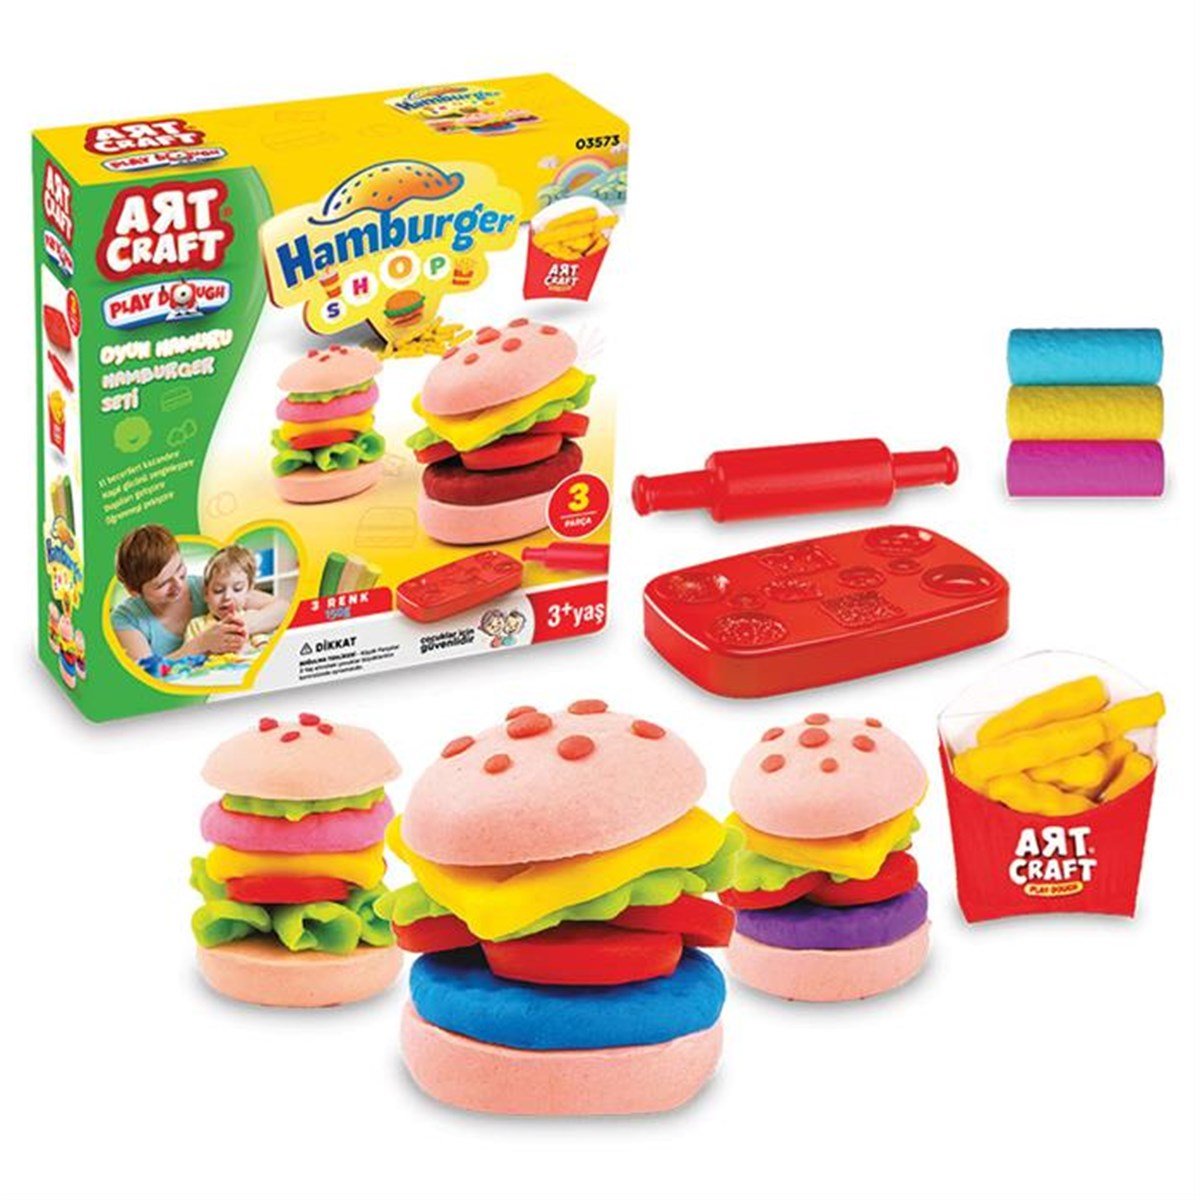 Art Craft Hamburger Set Oyun Hamuru (150 gr.) - Hamur Seti - Oyun Hamuru  Seti Fiyatı - Dede Toys Oyuncakları - Doğan Oyuncak Dünyası